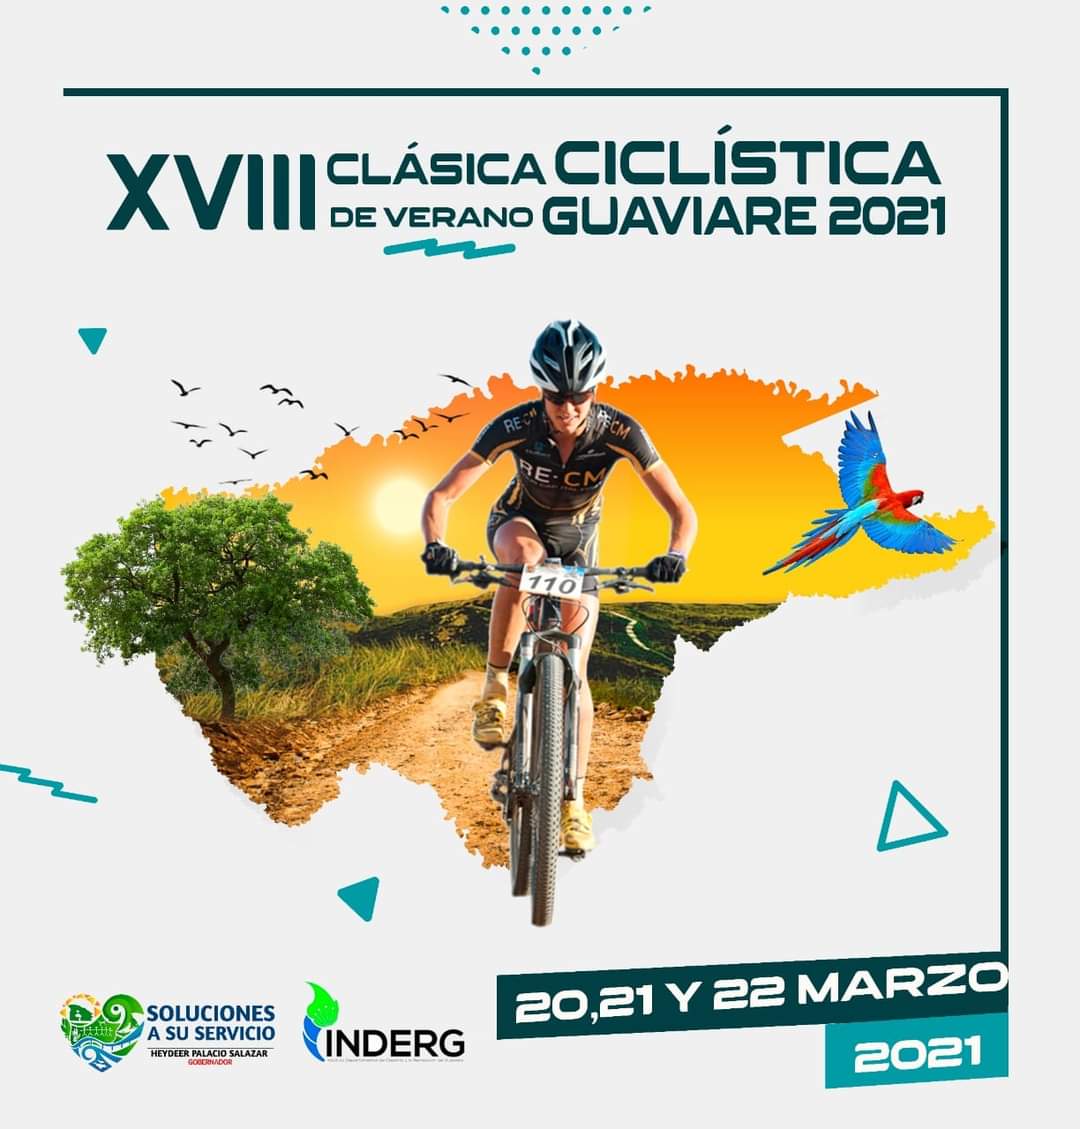 XVIII Clásica Ciclística de Verano Guaviare 2021